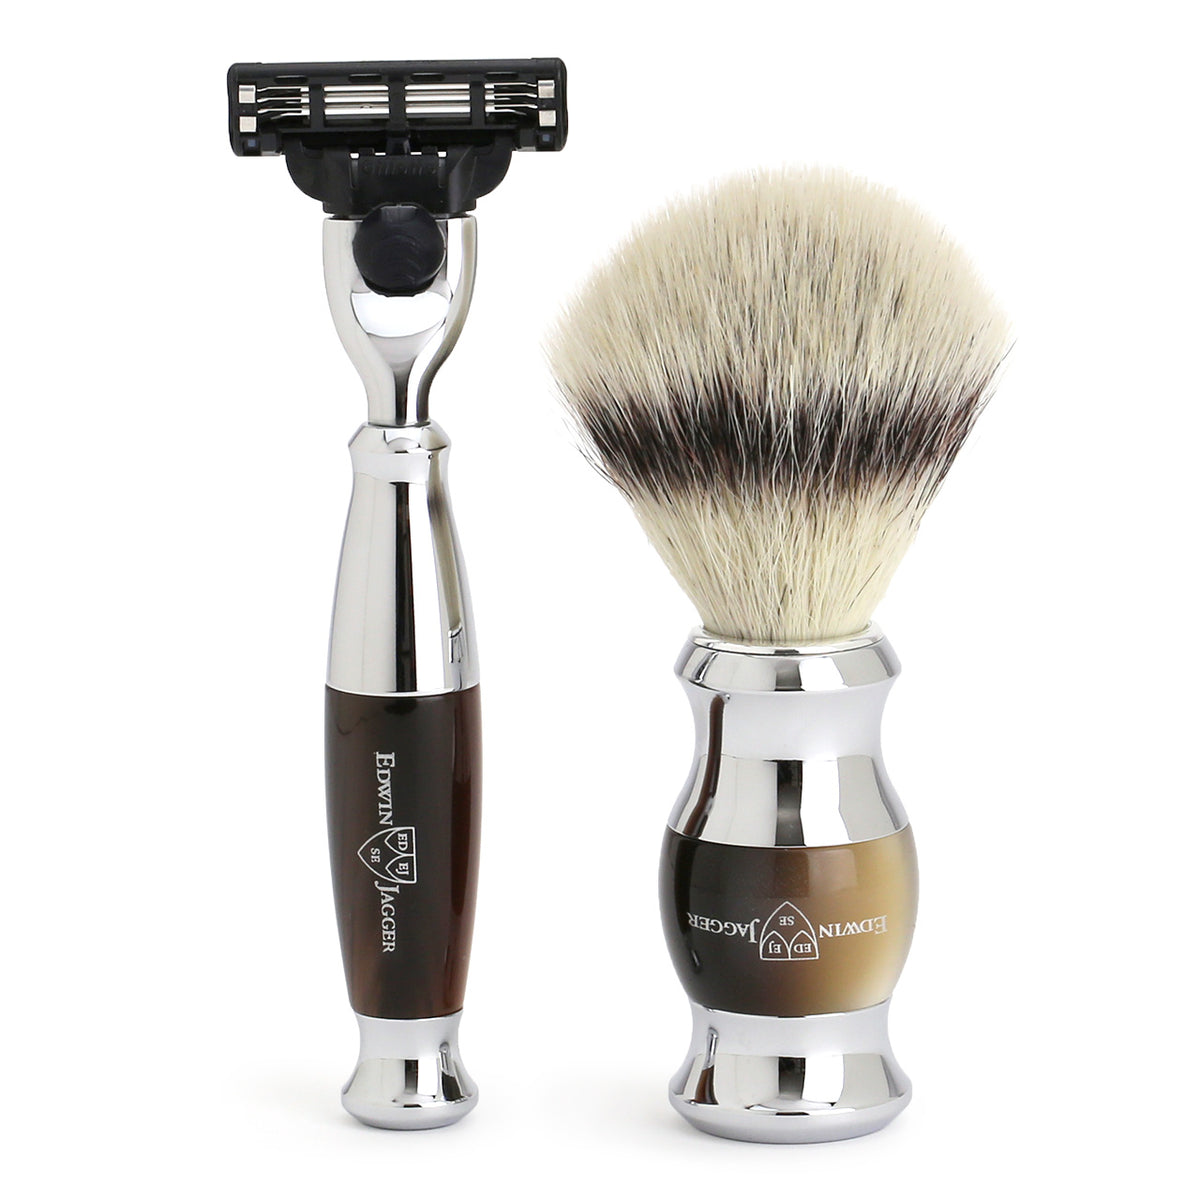 Mach3 Razor and Cruelty-Free Shaving Brush in Imitation Light Horn